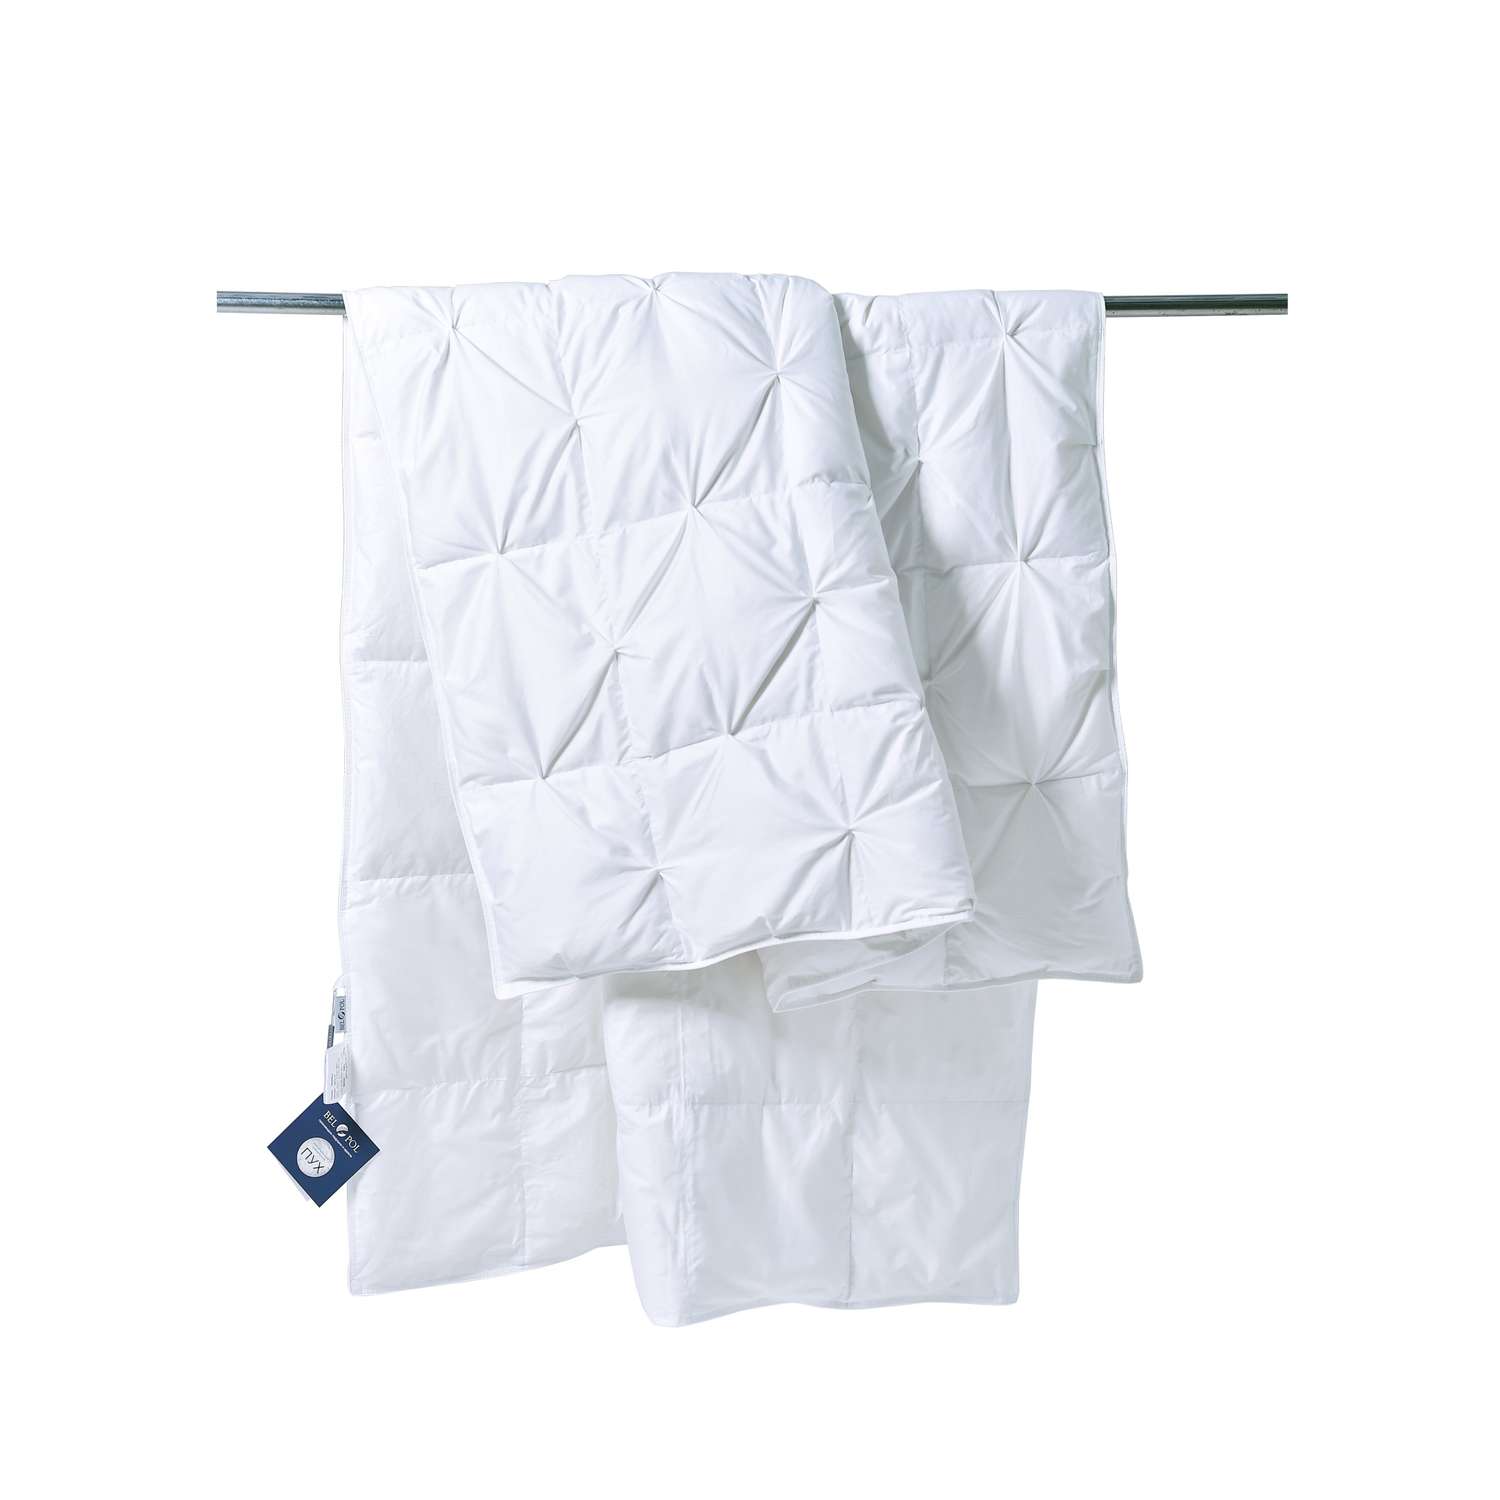 Одеяло BelPol пуховое BP ORION белый 200х220 буфы - фото 3